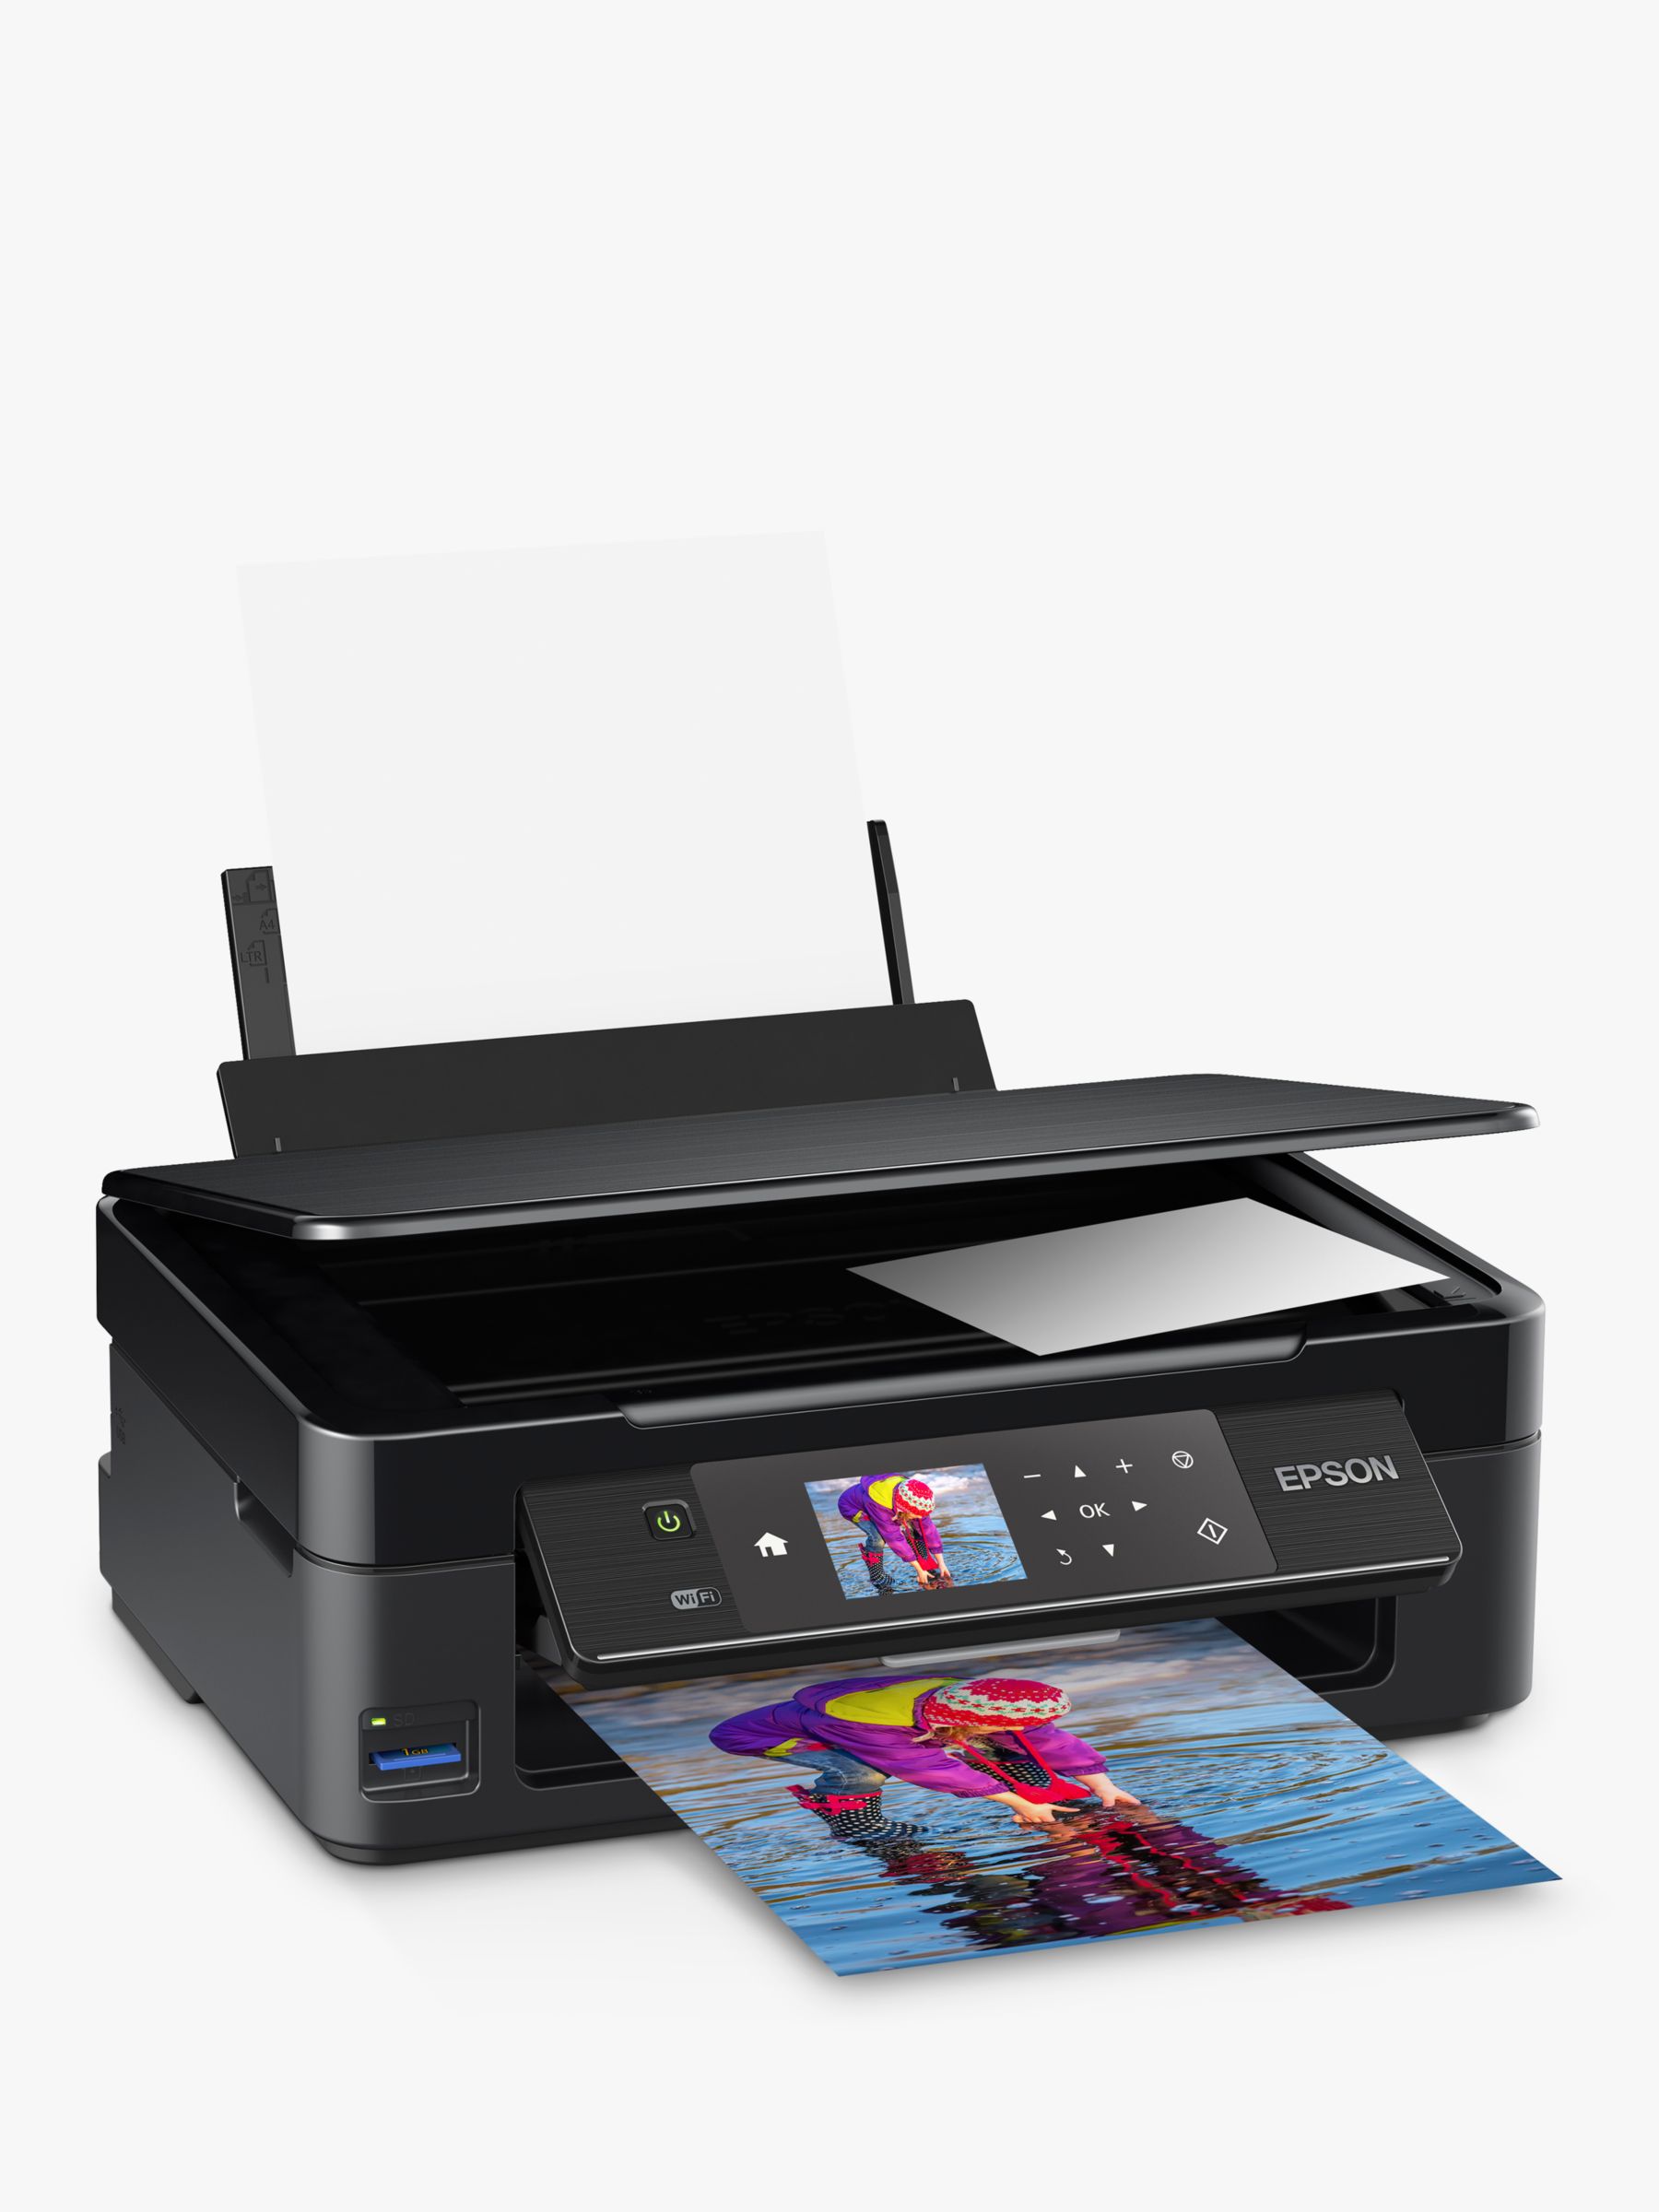 schwarz Scanner, Kopierer, WiFi 6,8 cm Display, Einzelpatronen, 4 Farben, DIN A4 Drucker Epson Expression Home XP-452 3-in-1 Tintenstrahl-Multifunktionsgerät 